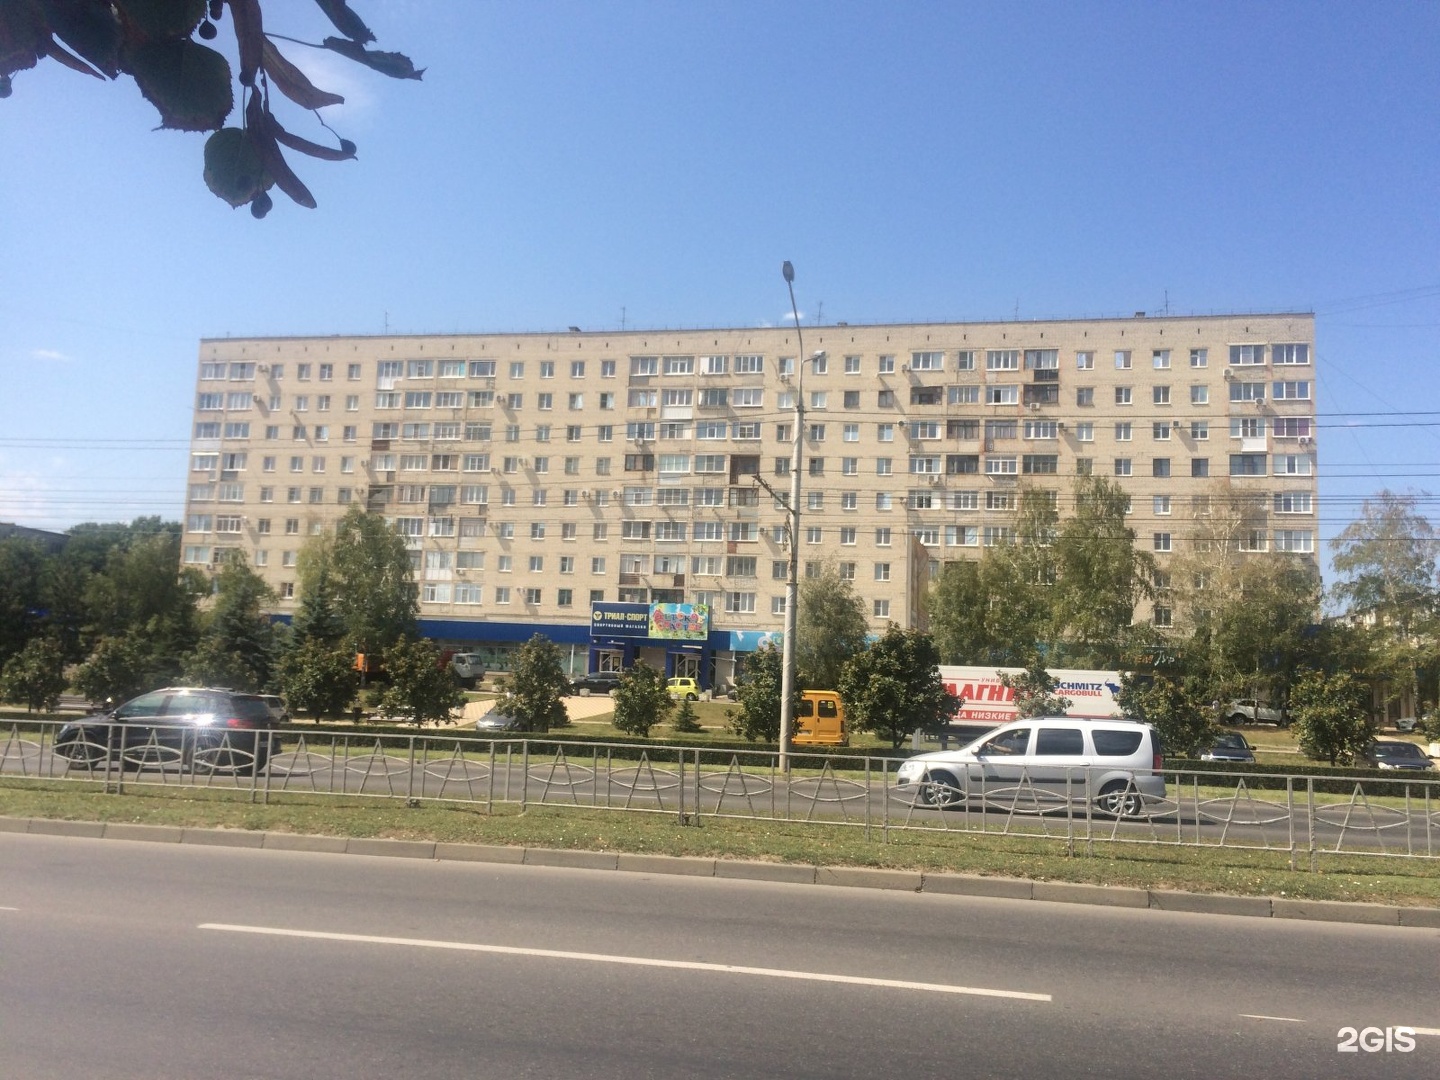 Адрес Спорт Магазина Ставрополь